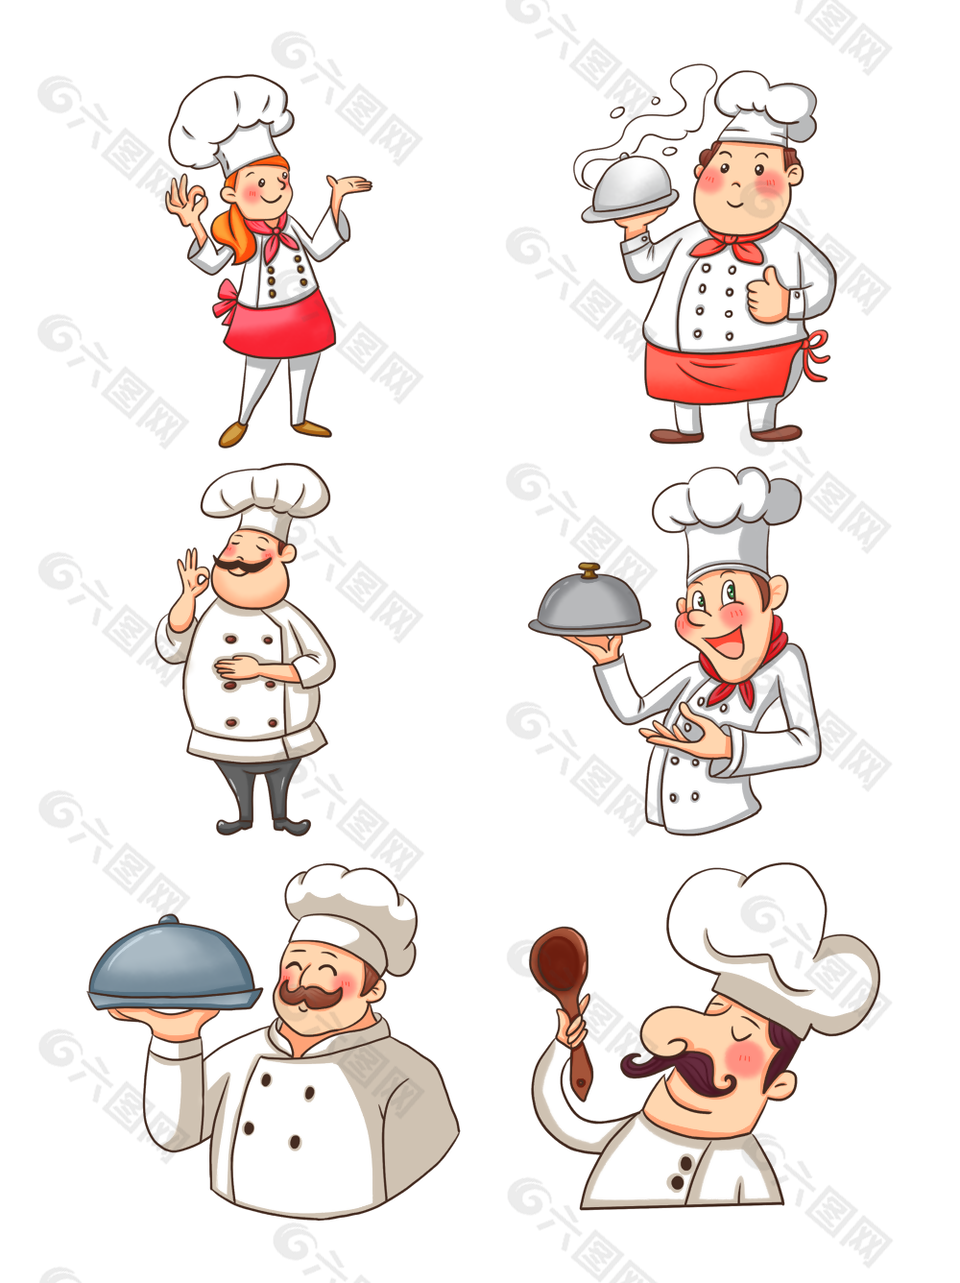 个性卡通戴高帽西餐厨师矢量素材下载